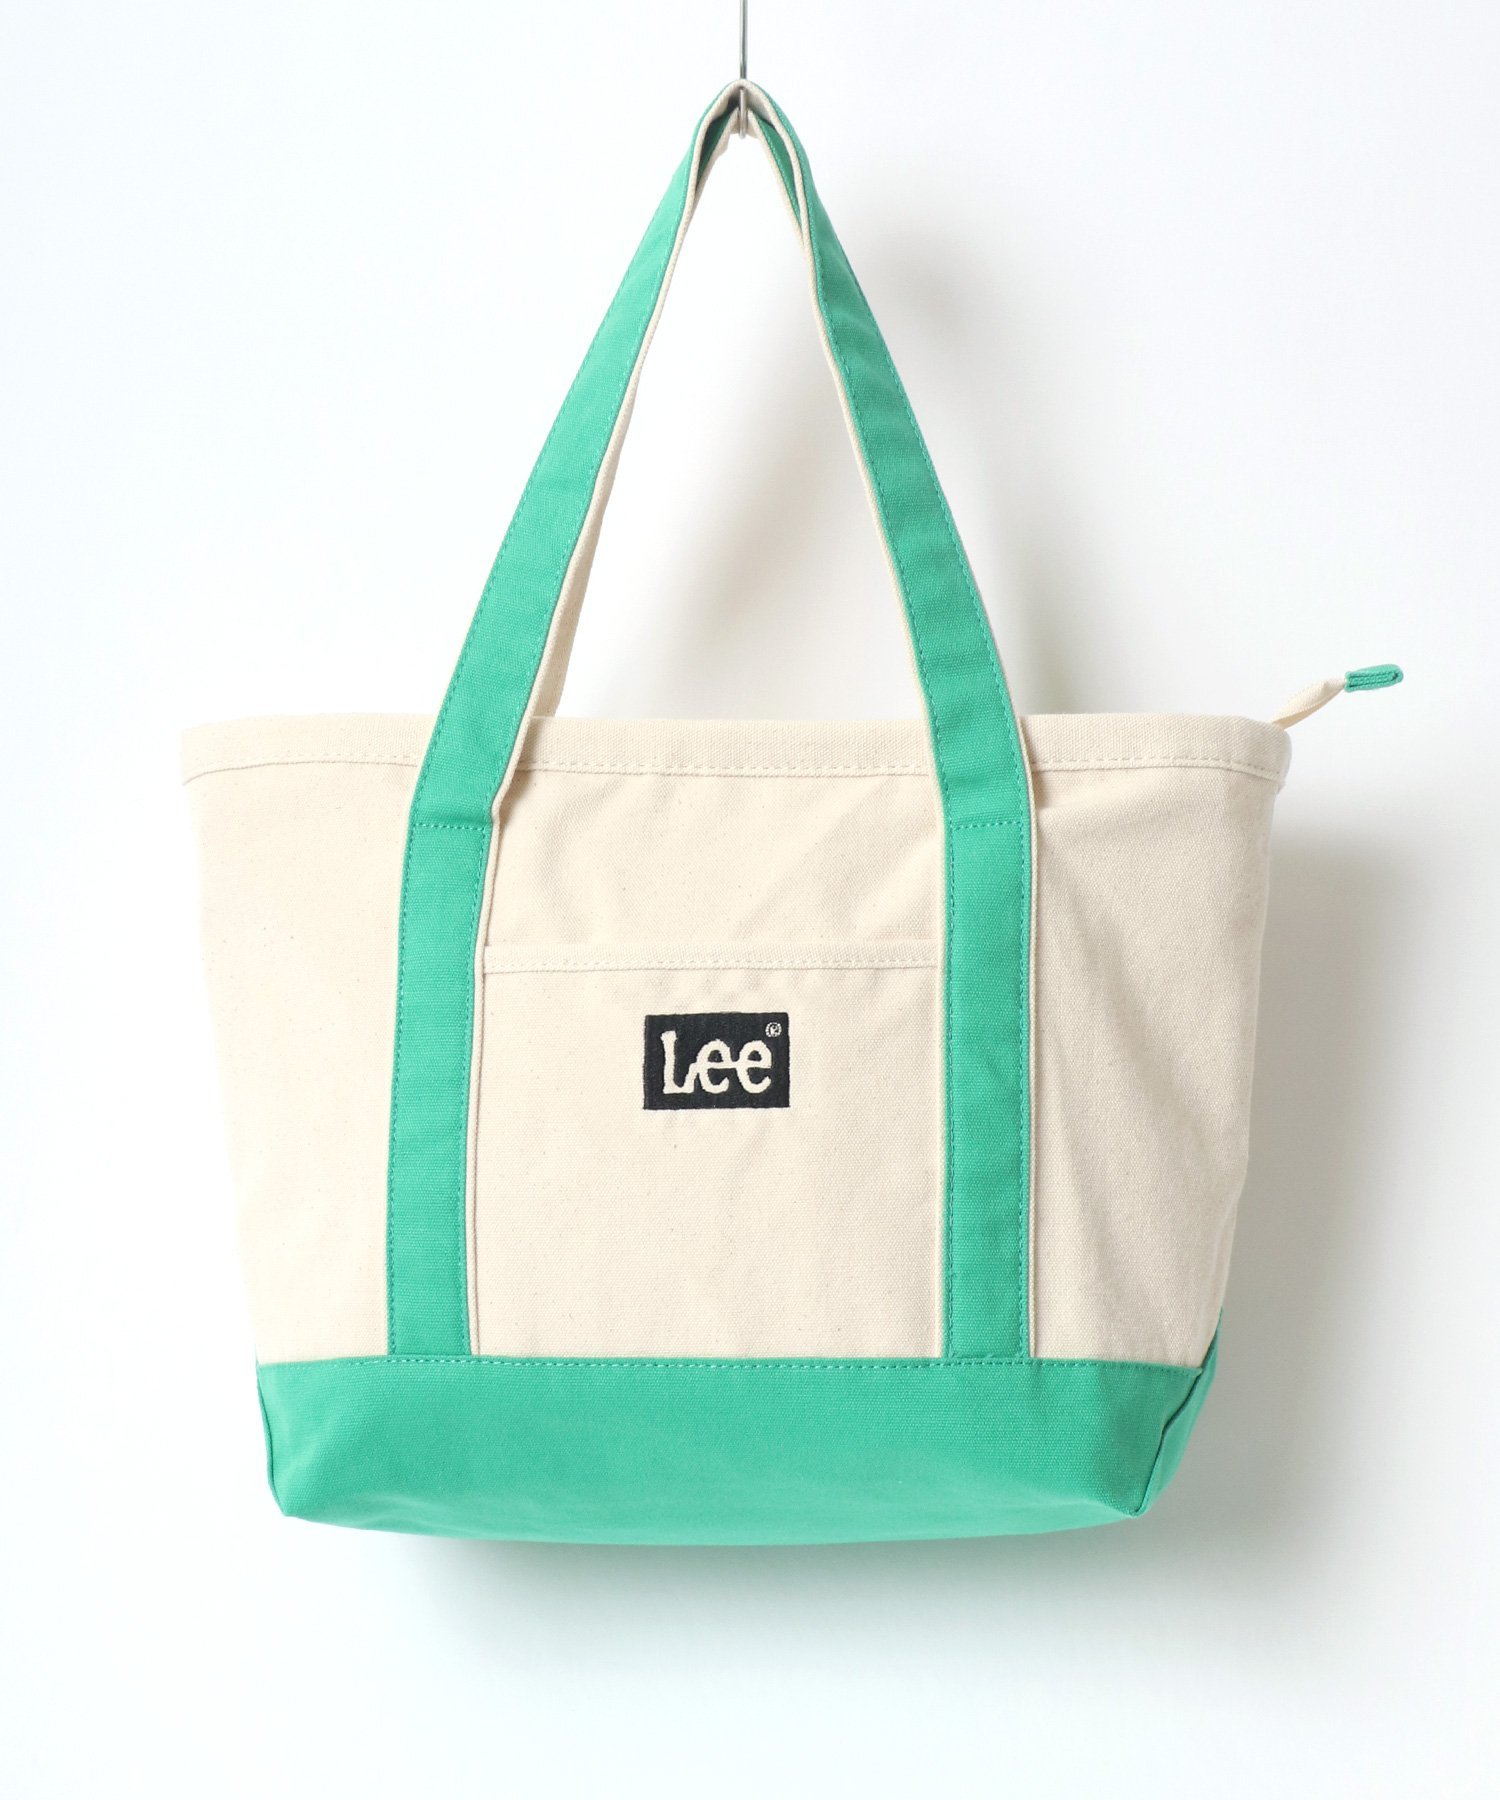 Lee Lee トートバッグ キャンバス キャンバストート メンズ レディース ラザル バッグ トートバッグ ホワイト